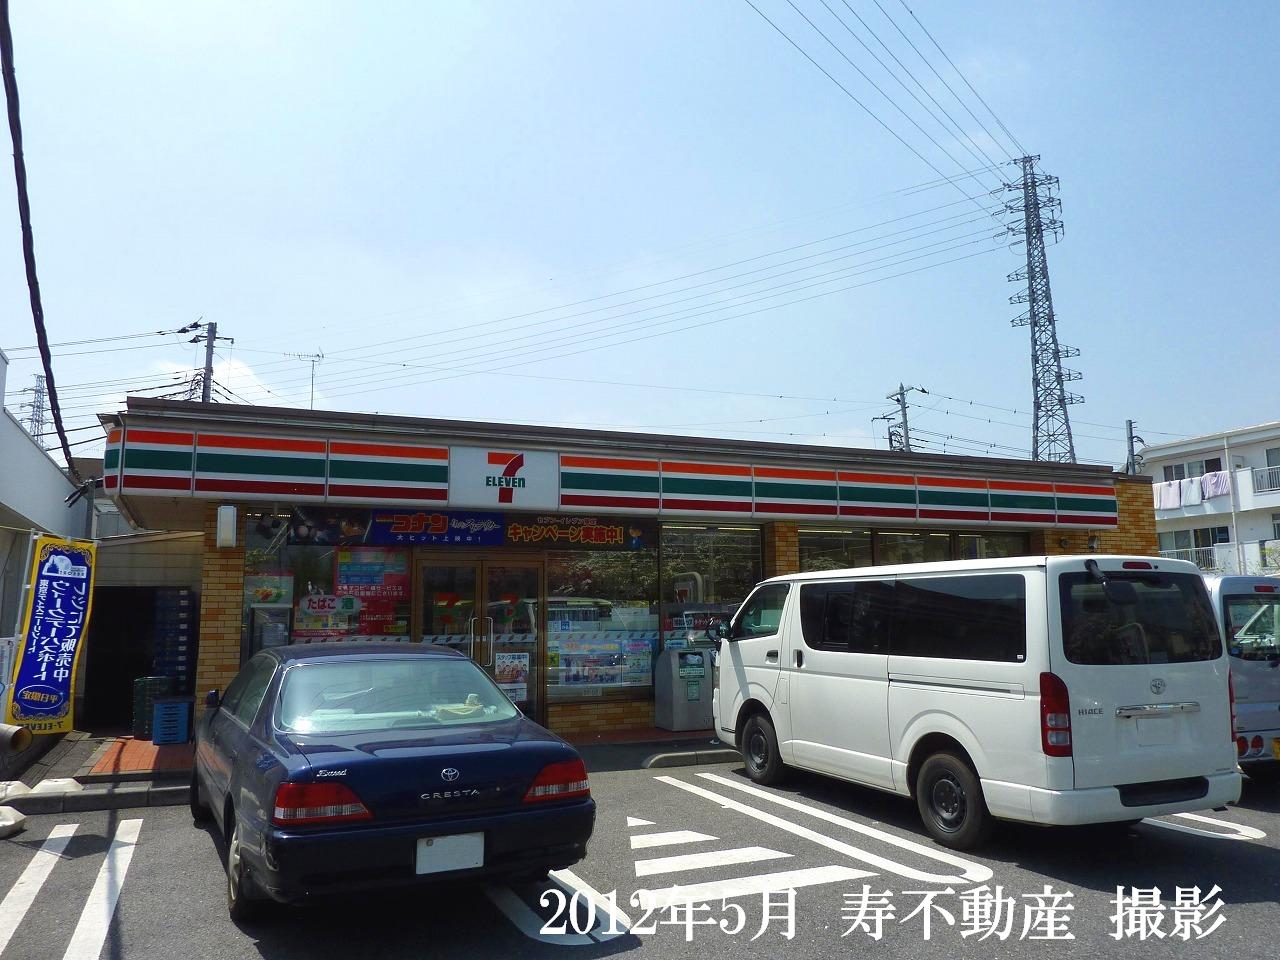 Convenience store. Seven-Eleven Okegawa Izumi 1-chome to (convenience store) 525m